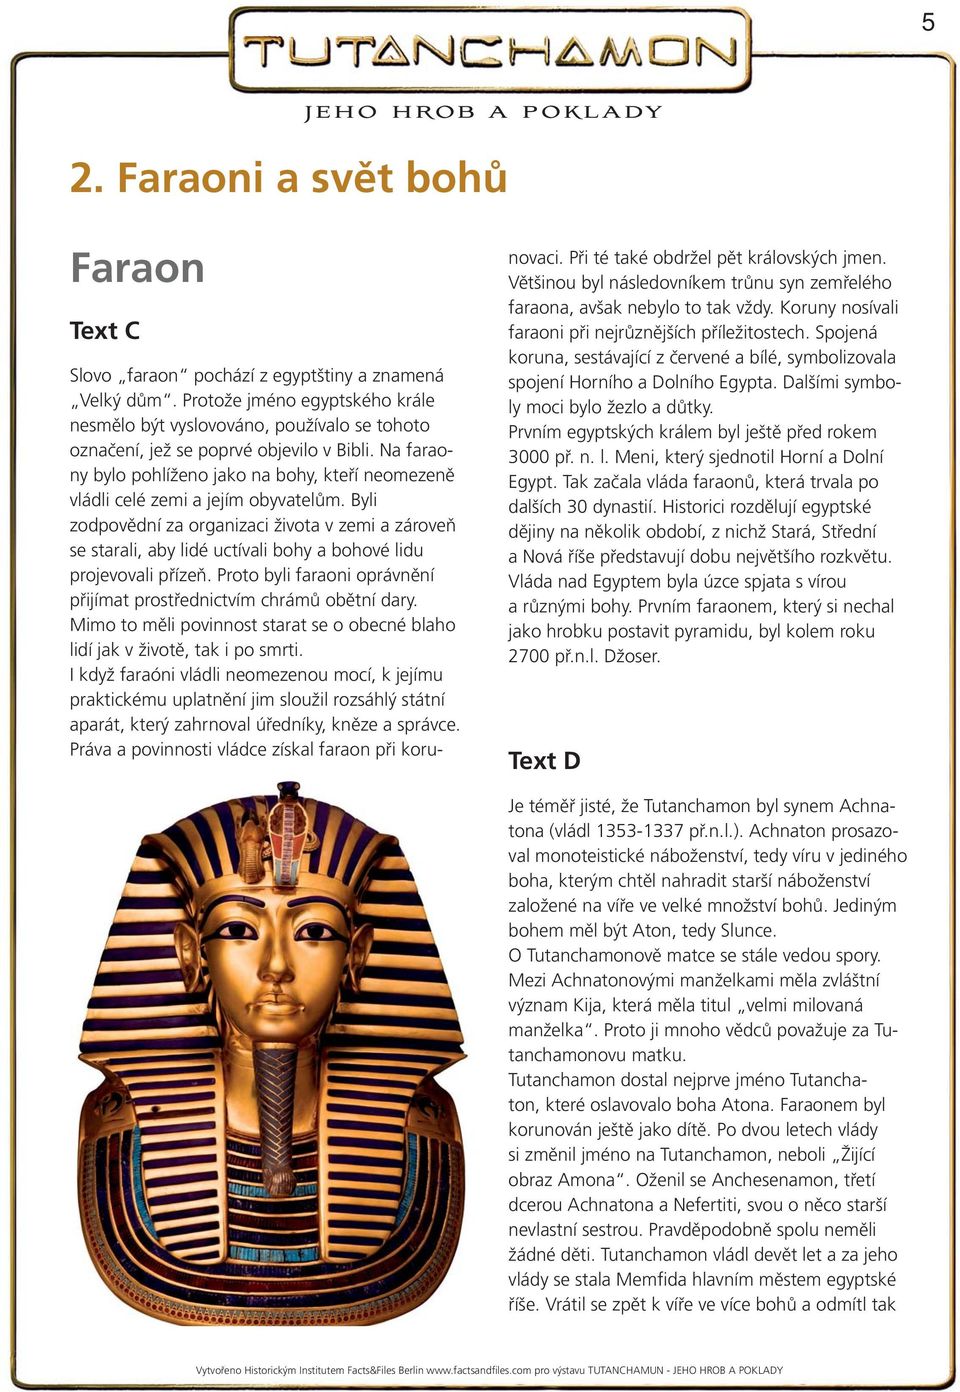 Na faraony bylo pohlíženo jako na bohy, kteří neomezeně vládli celé zemi a jejím obyvatelům.